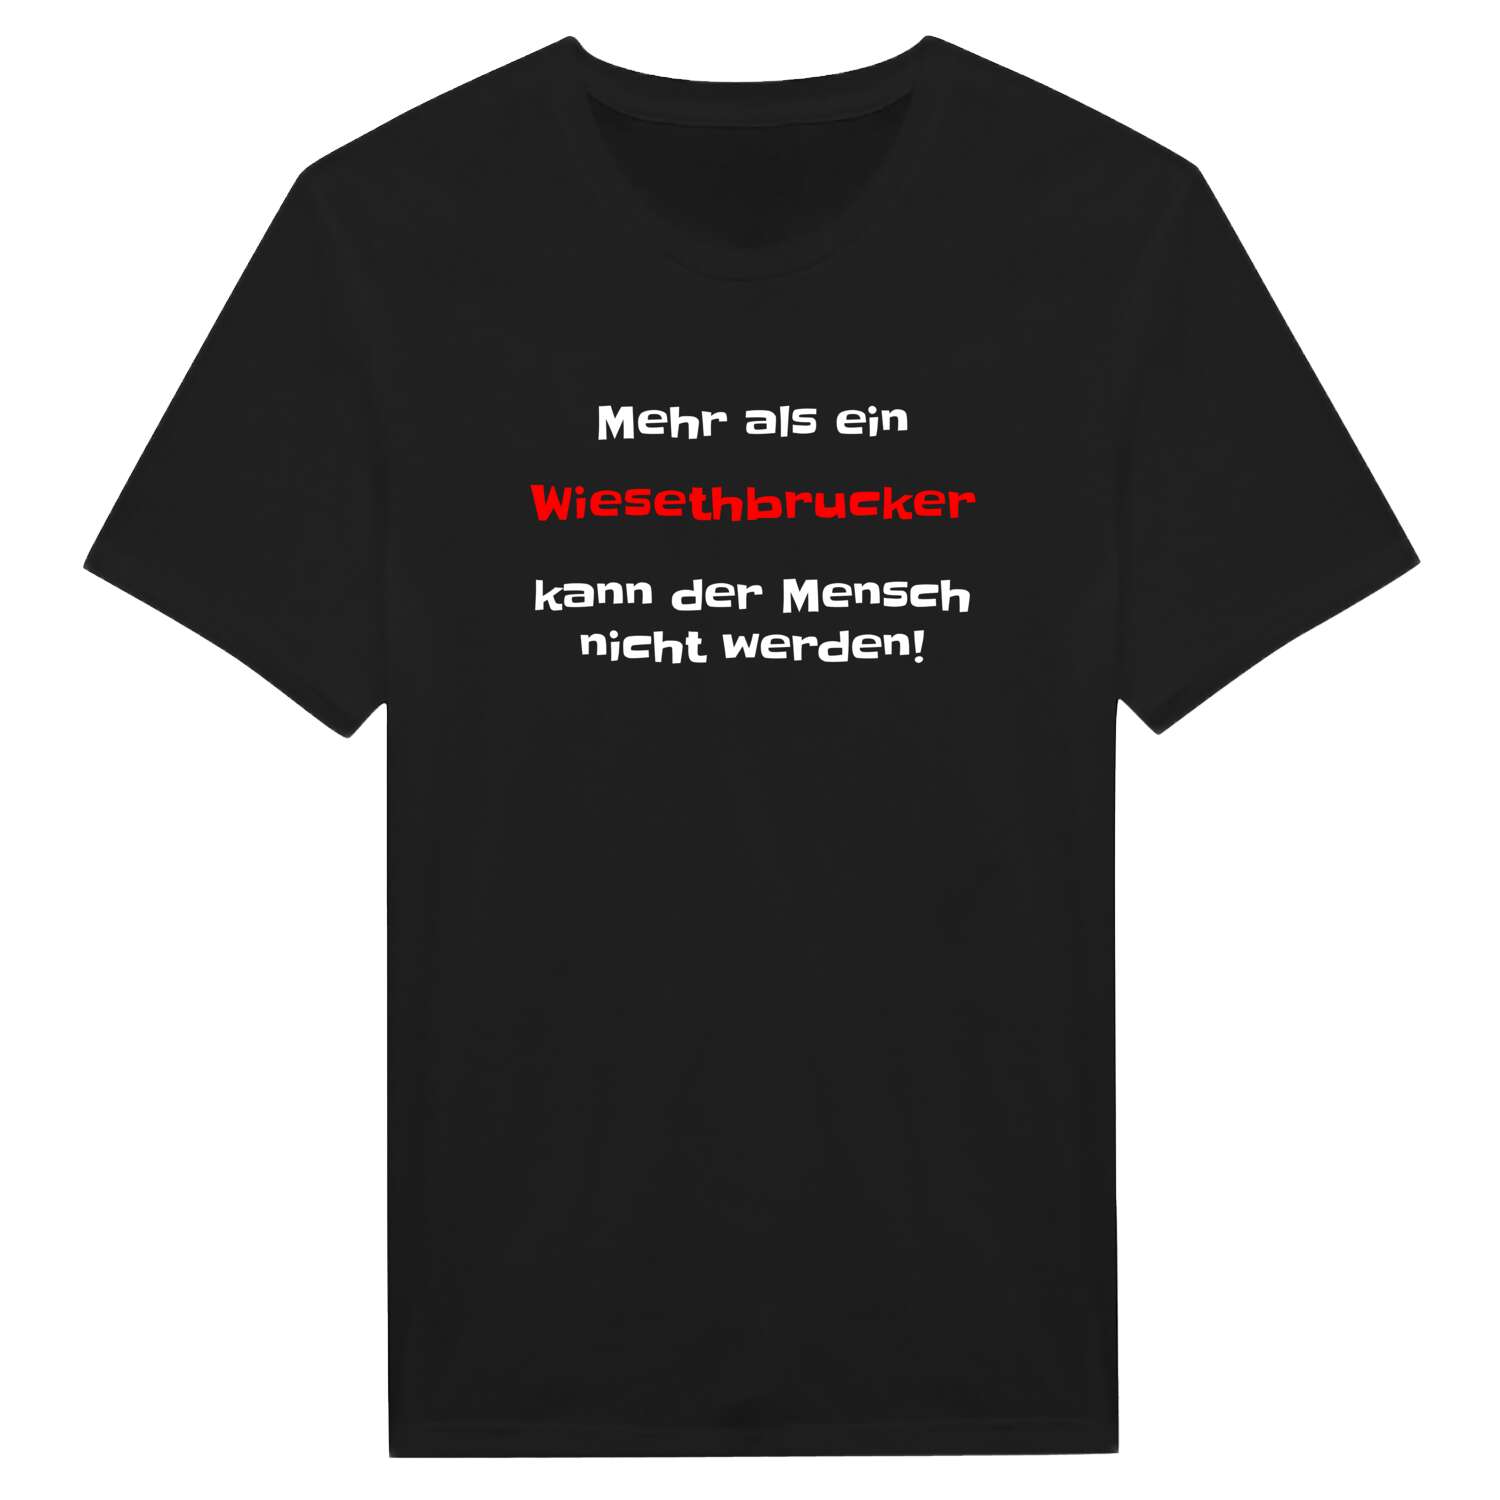 Wiesethbruck T-Shirt »Mehr als ein«